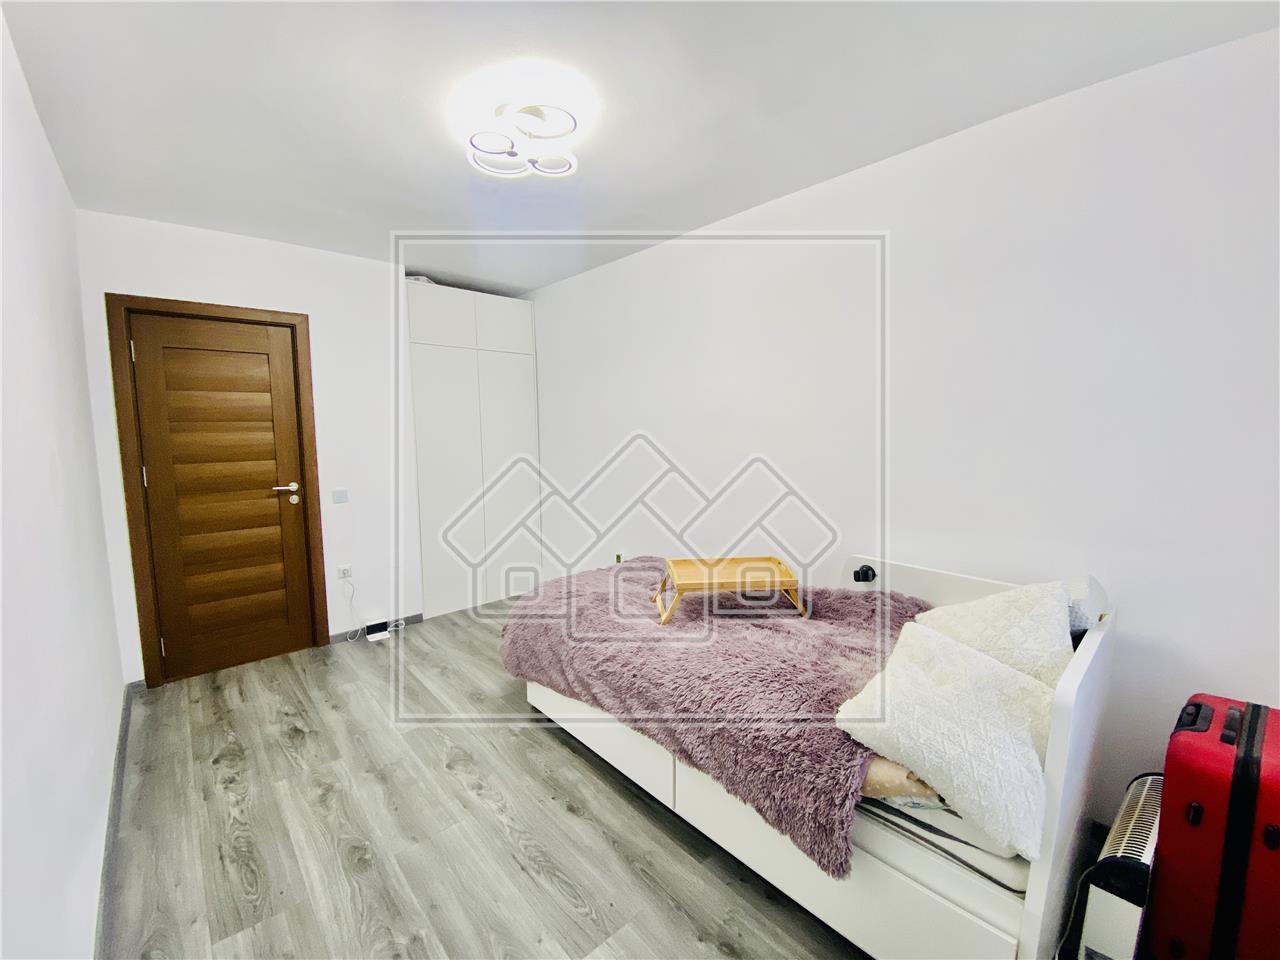 2 Zimmer Wohnung kaufen in Sibiu -luxuri?s eingerichtet und ausgestatt